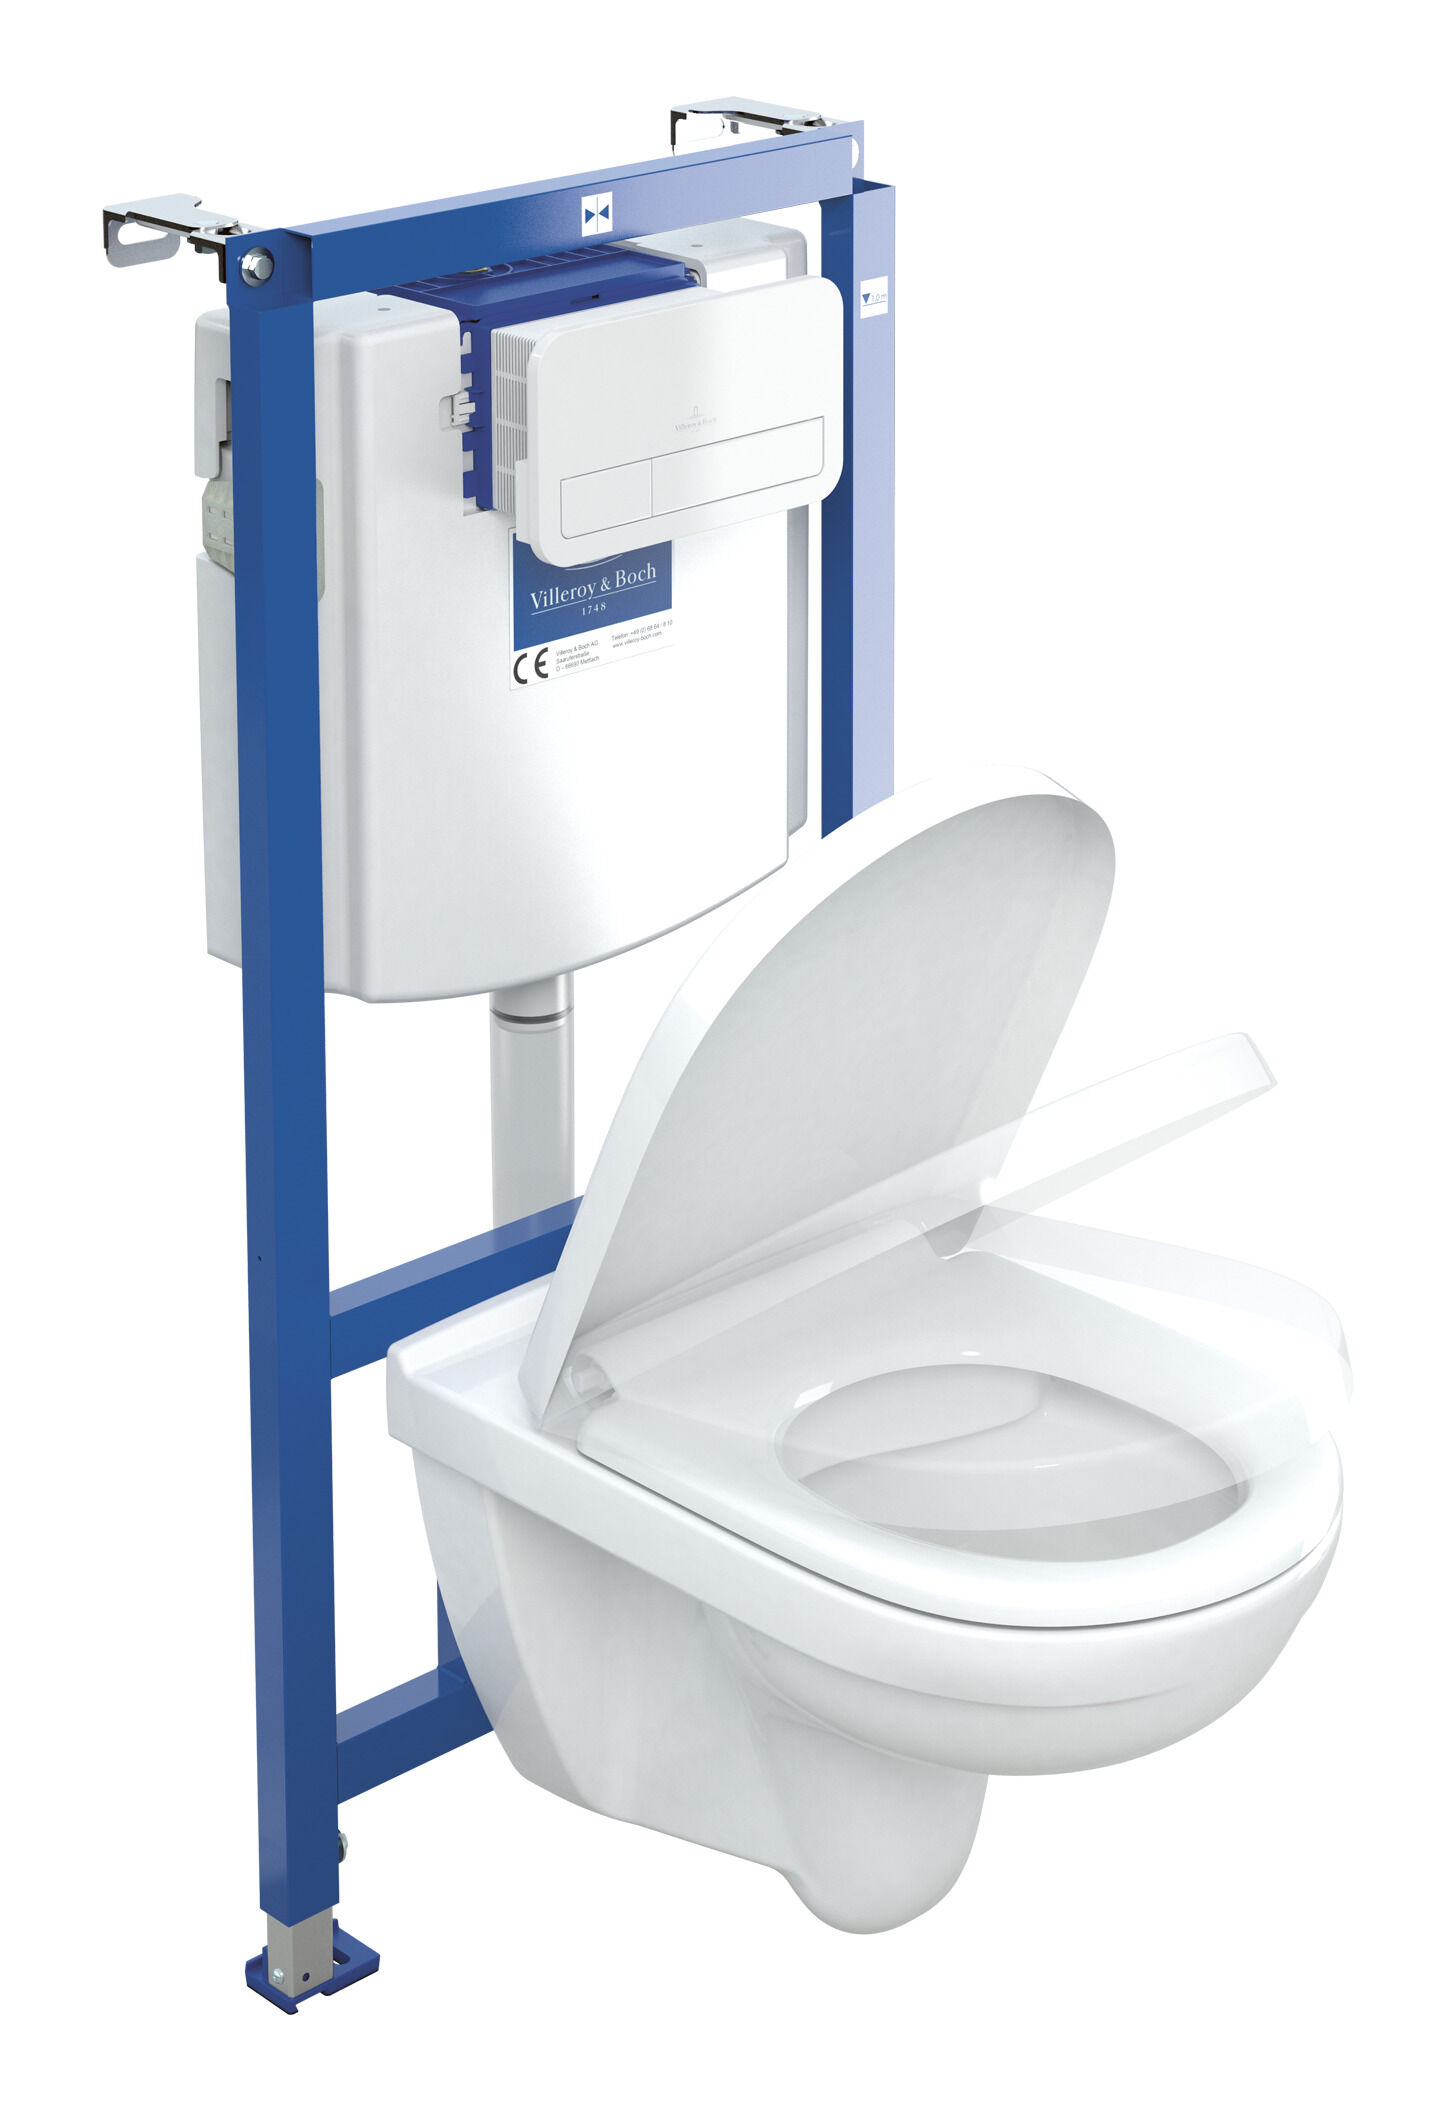  Villeroy Und Boch Toilette Test 2020 Die aktuell beliebtesten 